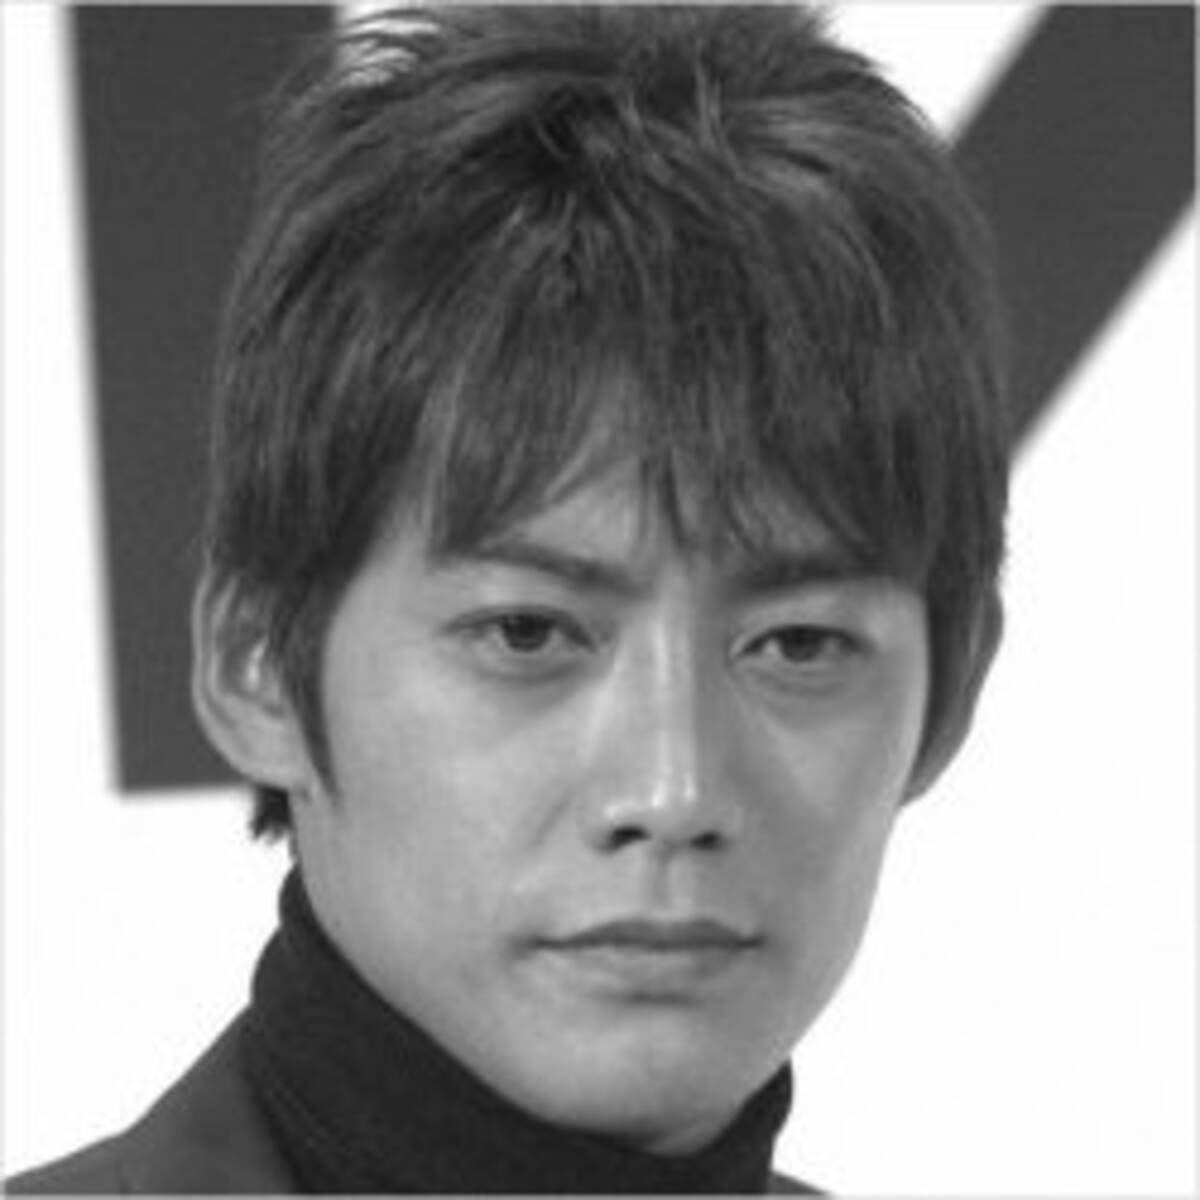 織田裕二 スーツ2 に急浮上した 反町隆史レギュラー参加 のウルトラc 年4月19日 エキサイトニュース